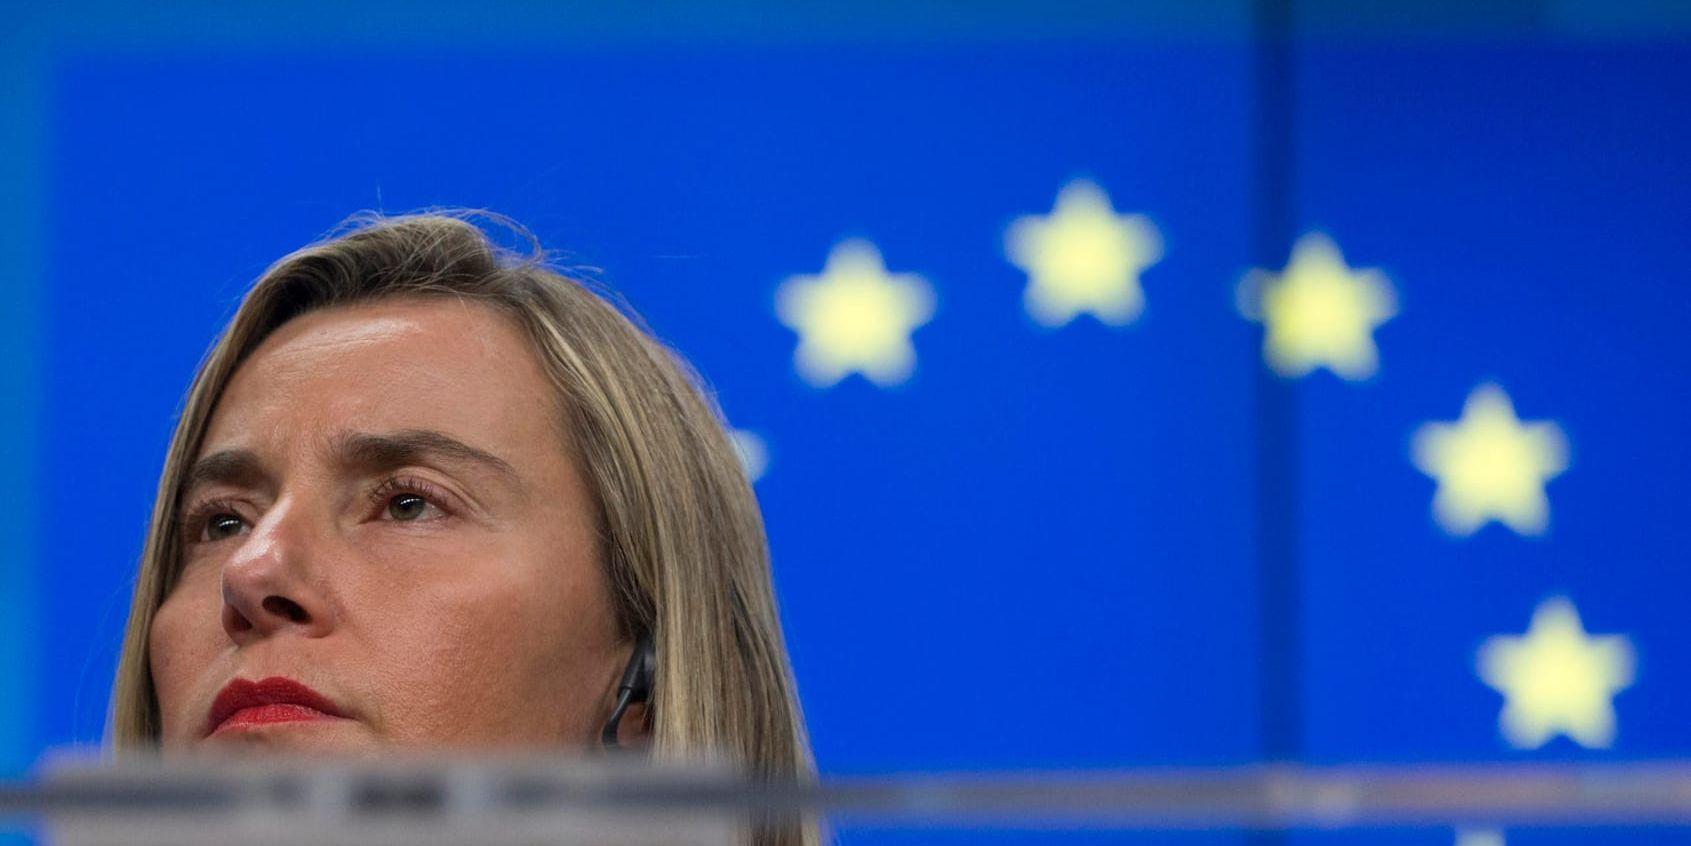 EU:s utrikeschef Federica Mogherini uttalar sig om Libyen sedan Frankrike och Italien kunnat enas om ett uttalande. Arkivbild.